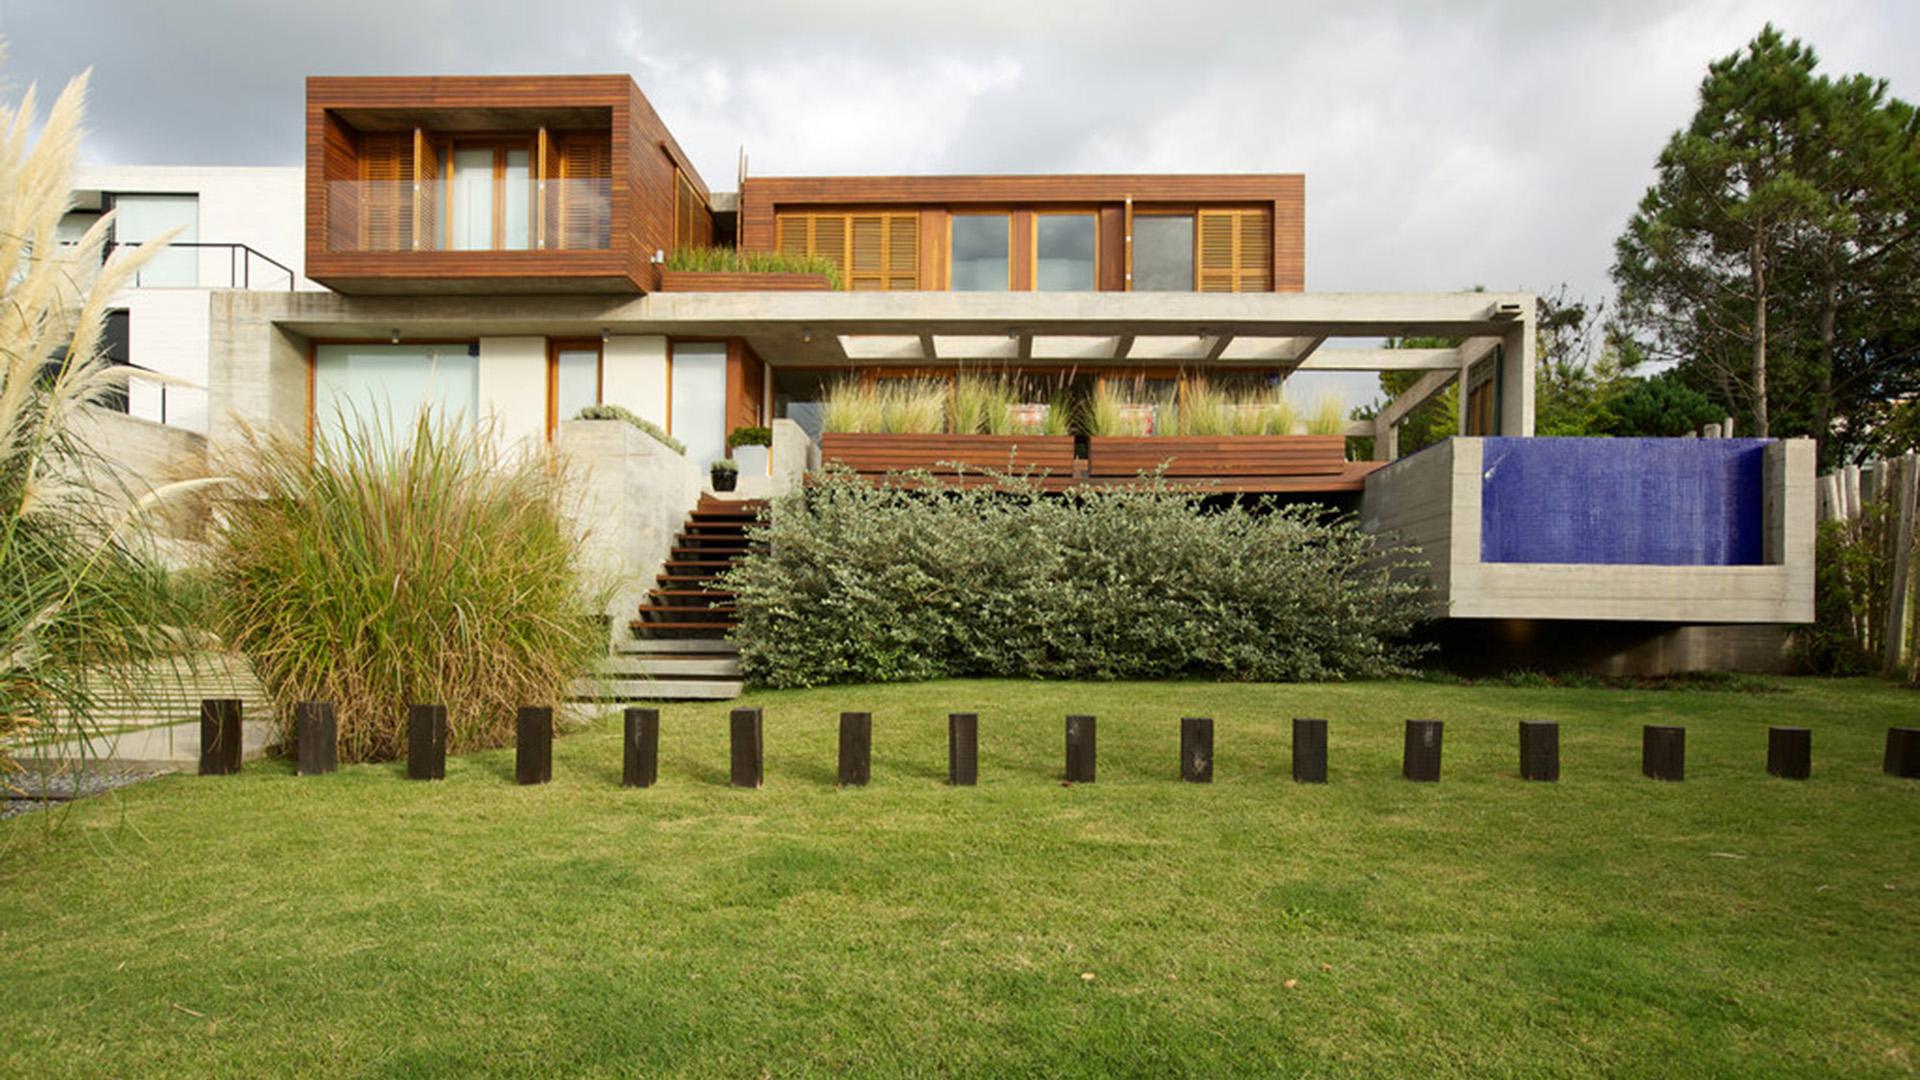 Modern House with Ocean Views located in El Chorro, Punta del Este, Uruguay, listed by Curiocity Villas.